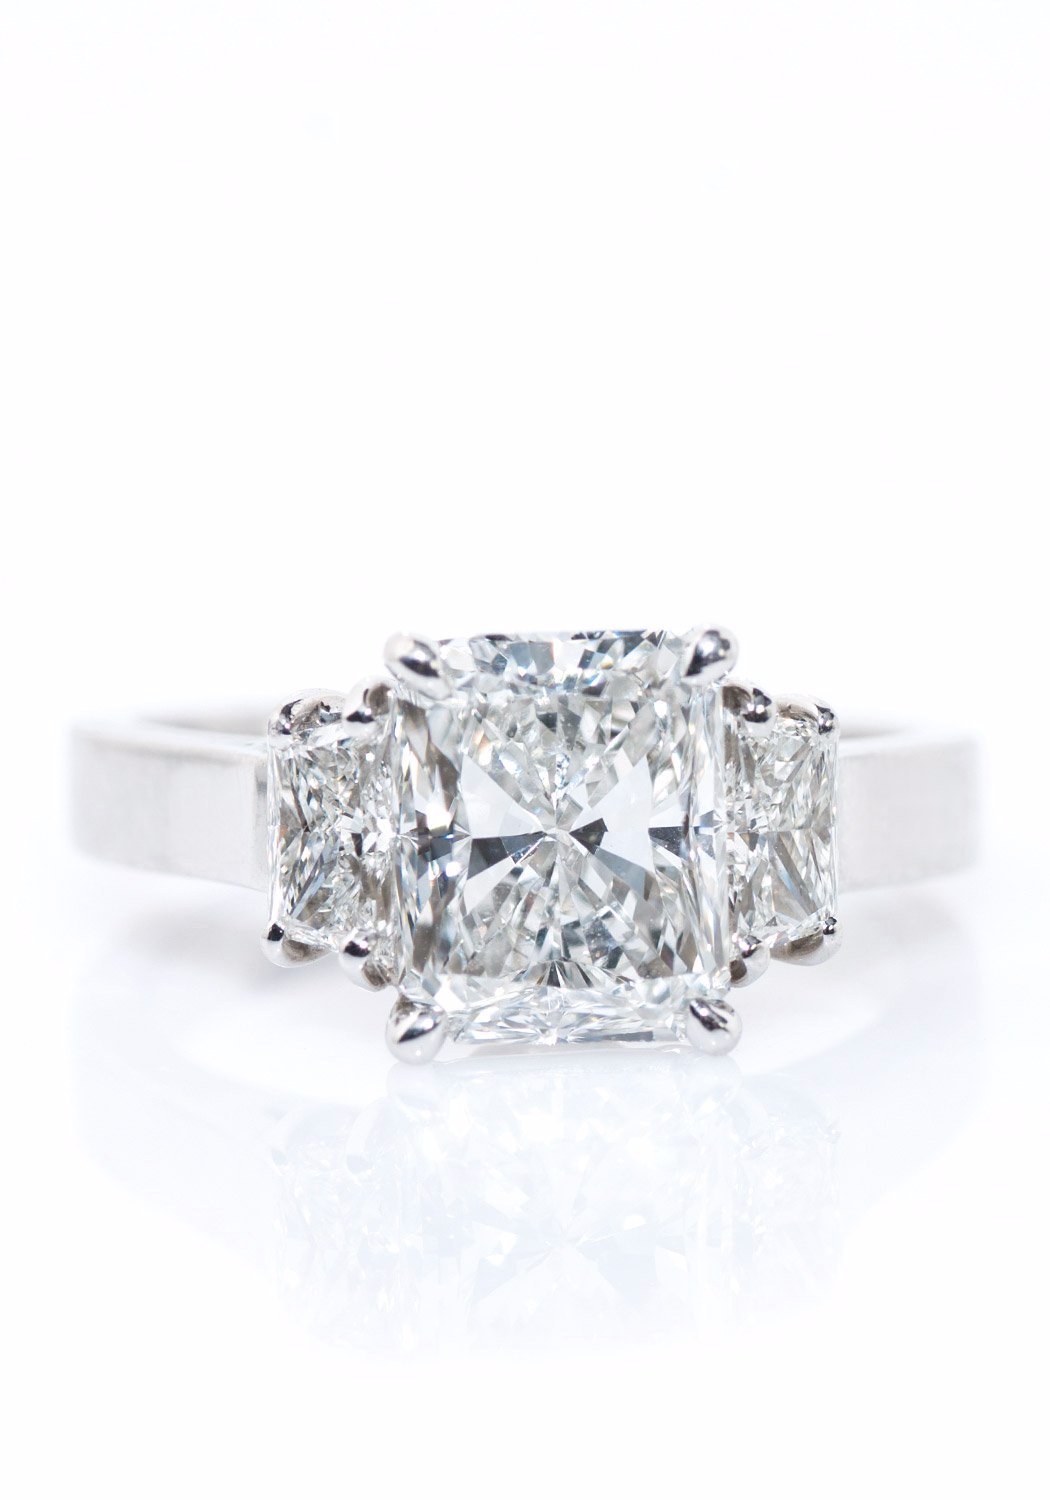 Louis Glick Platinum Large Starburst 3-Stone Trilogy Diamond Ring